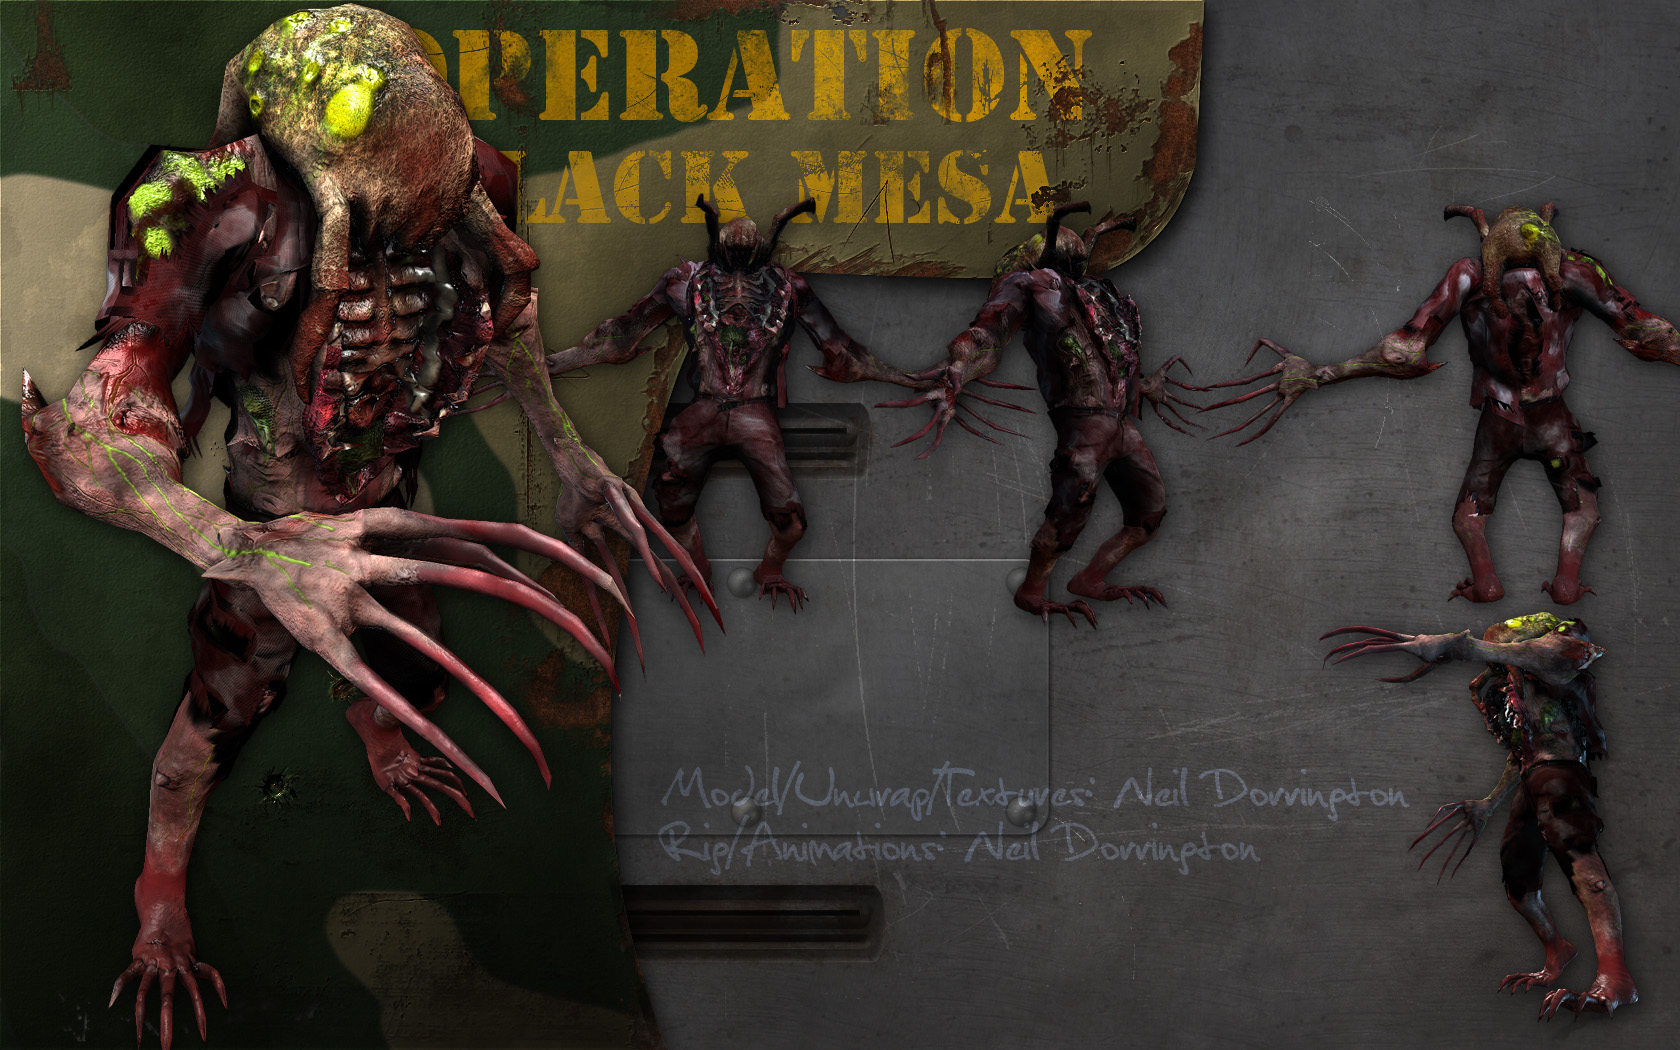 September Media Release image - Operation: Black Mesa mod for Half-Life 2.